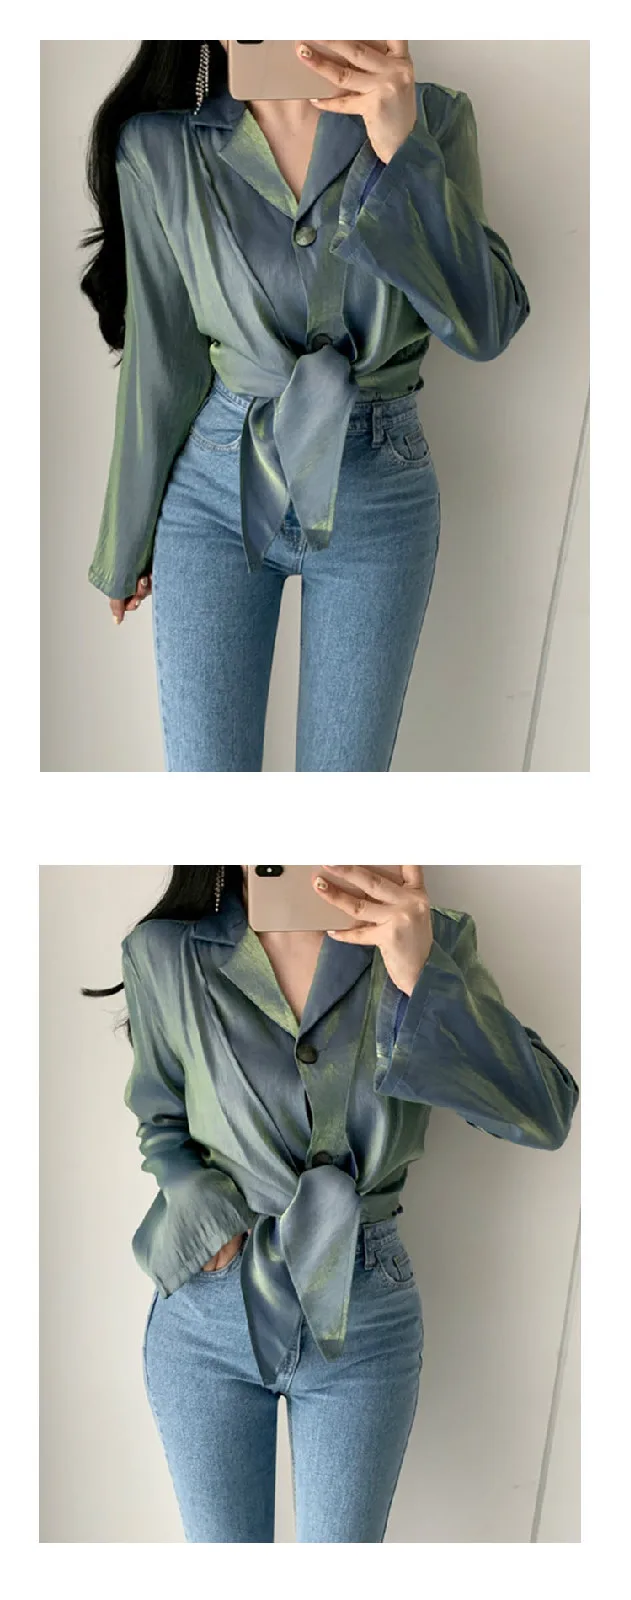 Neploe дизайн Модная мерсеризованная атласная Блуза с длинным рукавом Глянцевая неровная отложной воротник Blusas пояс для стройной талии рубашка